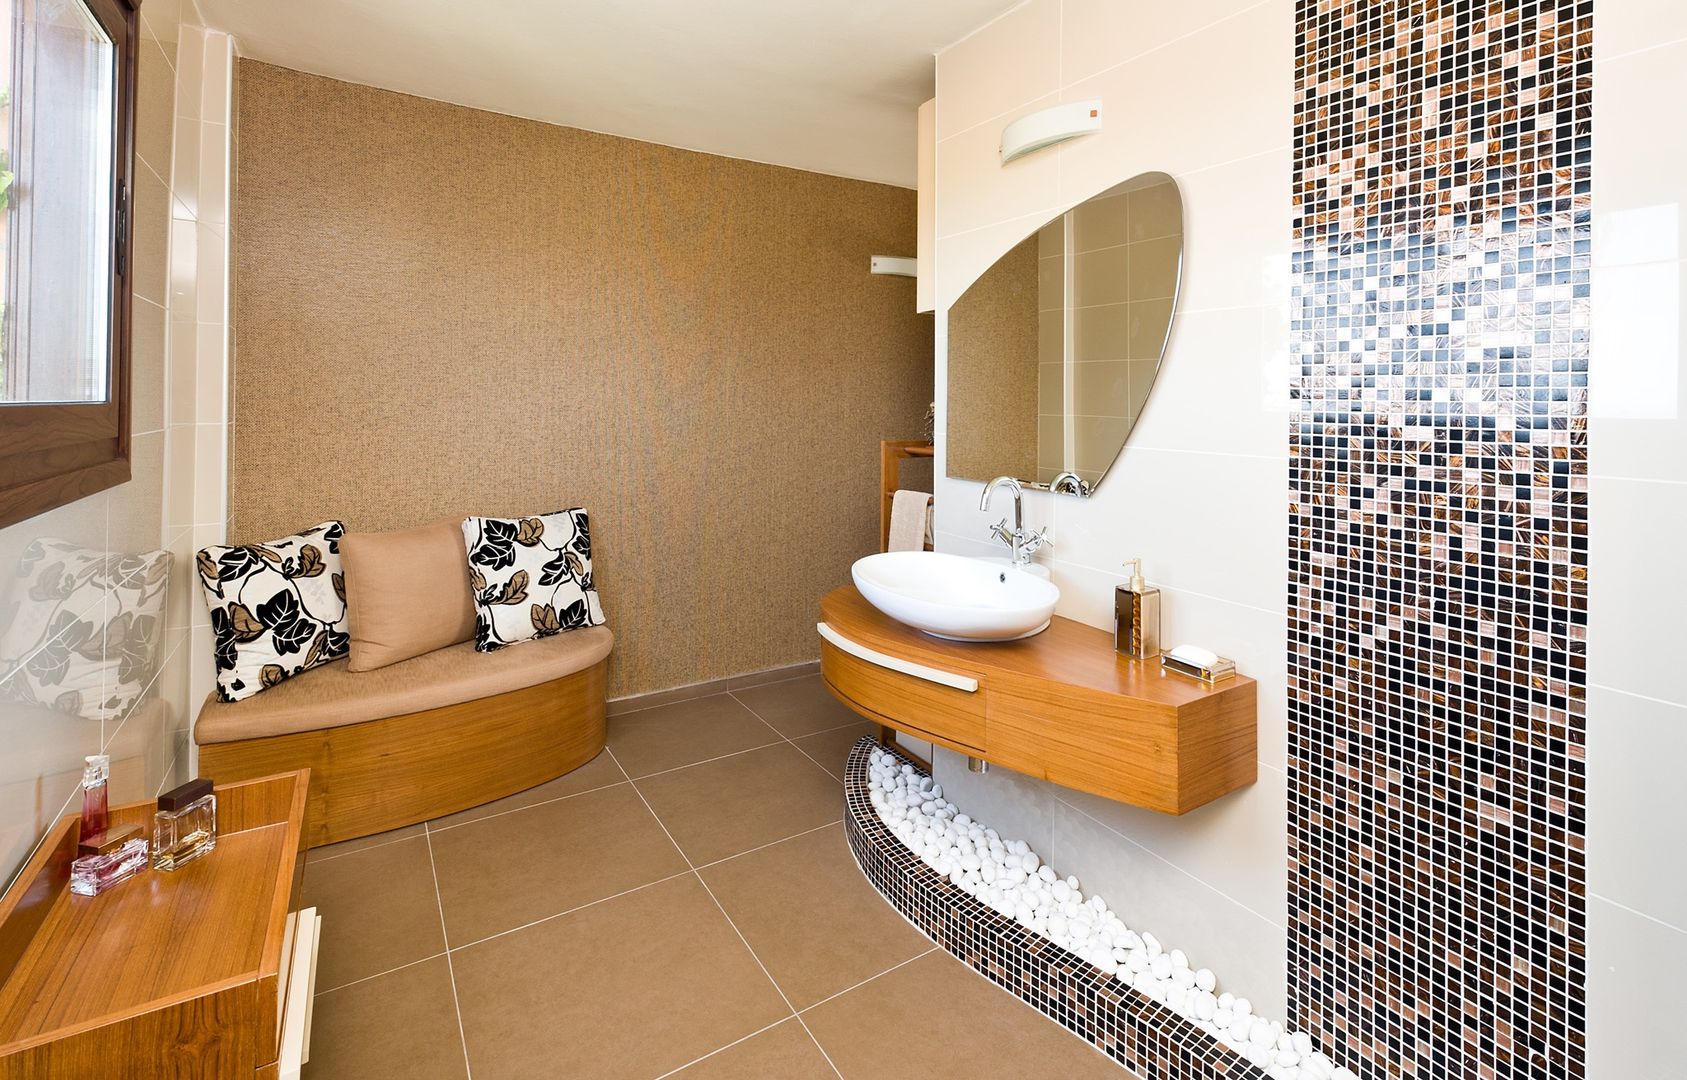 Bathroom / Girne / Cyprus, Şölen Üstüner İç mimarlık Şölen Üstüner İç mimarlık 모던스타일 욕실